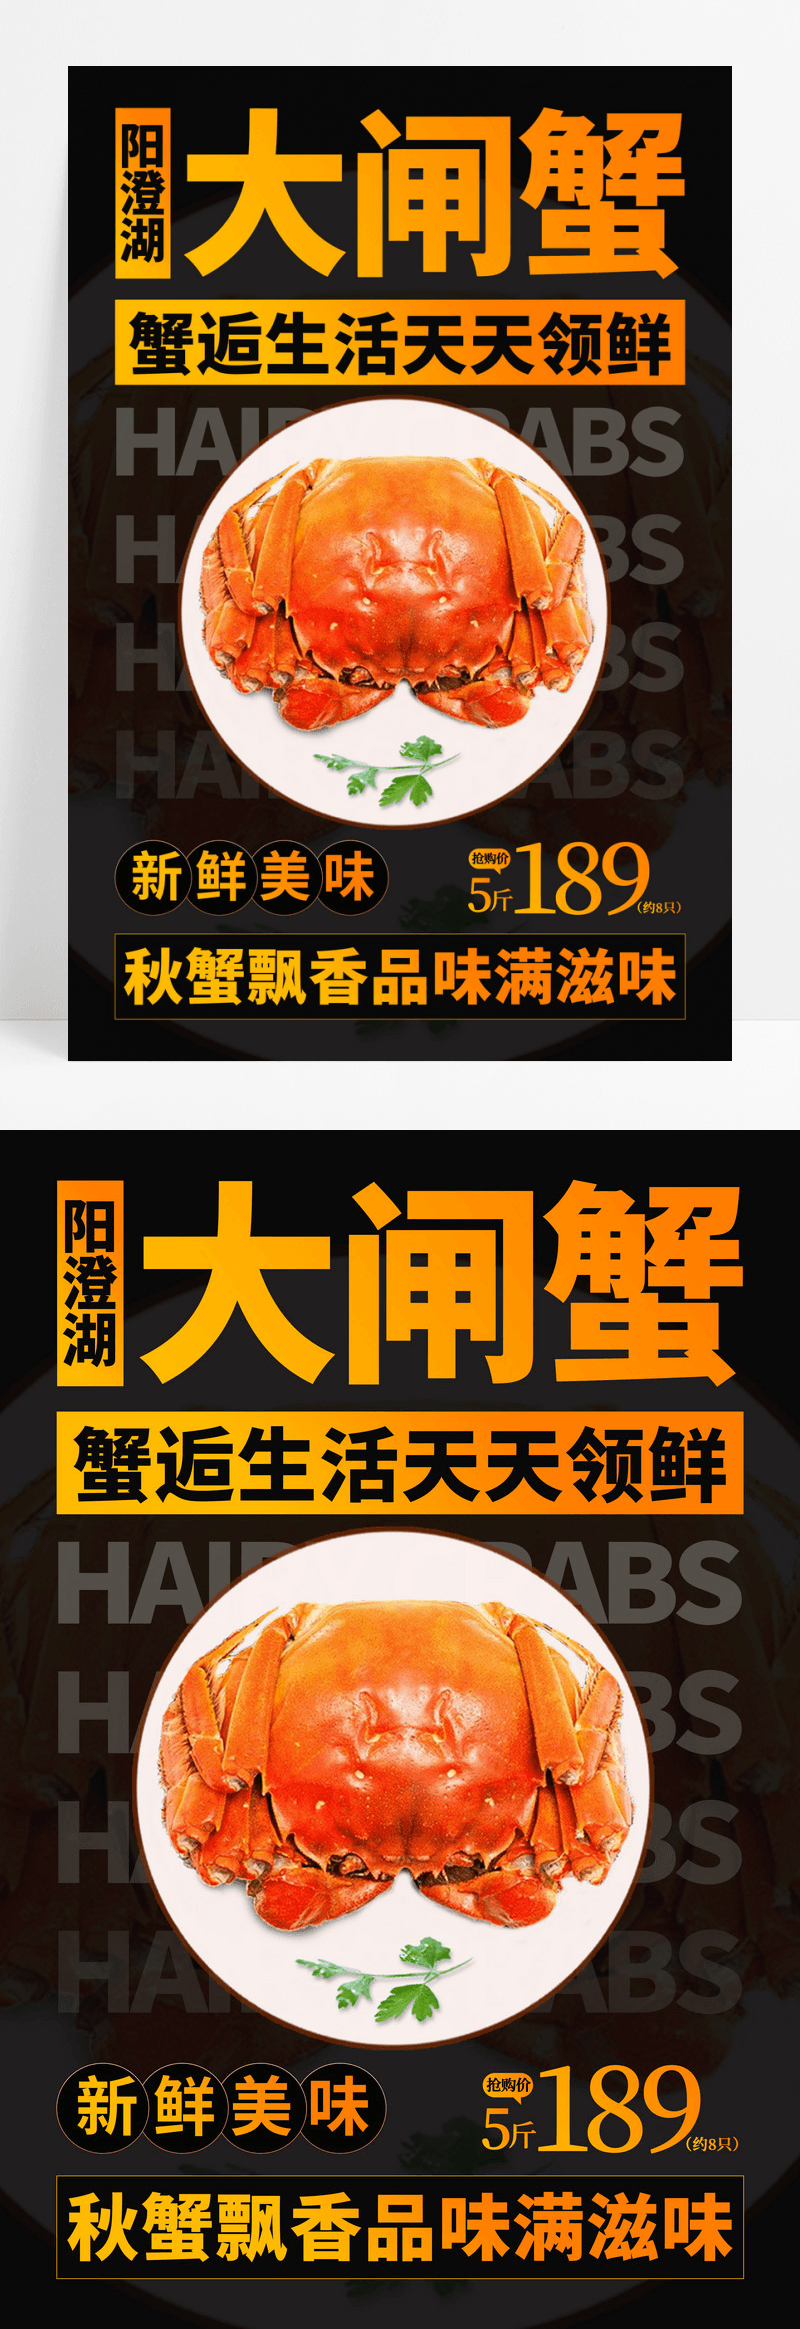 黑色创意阳澄湖的大闸蟹美食餐饮活动促销宣传海报